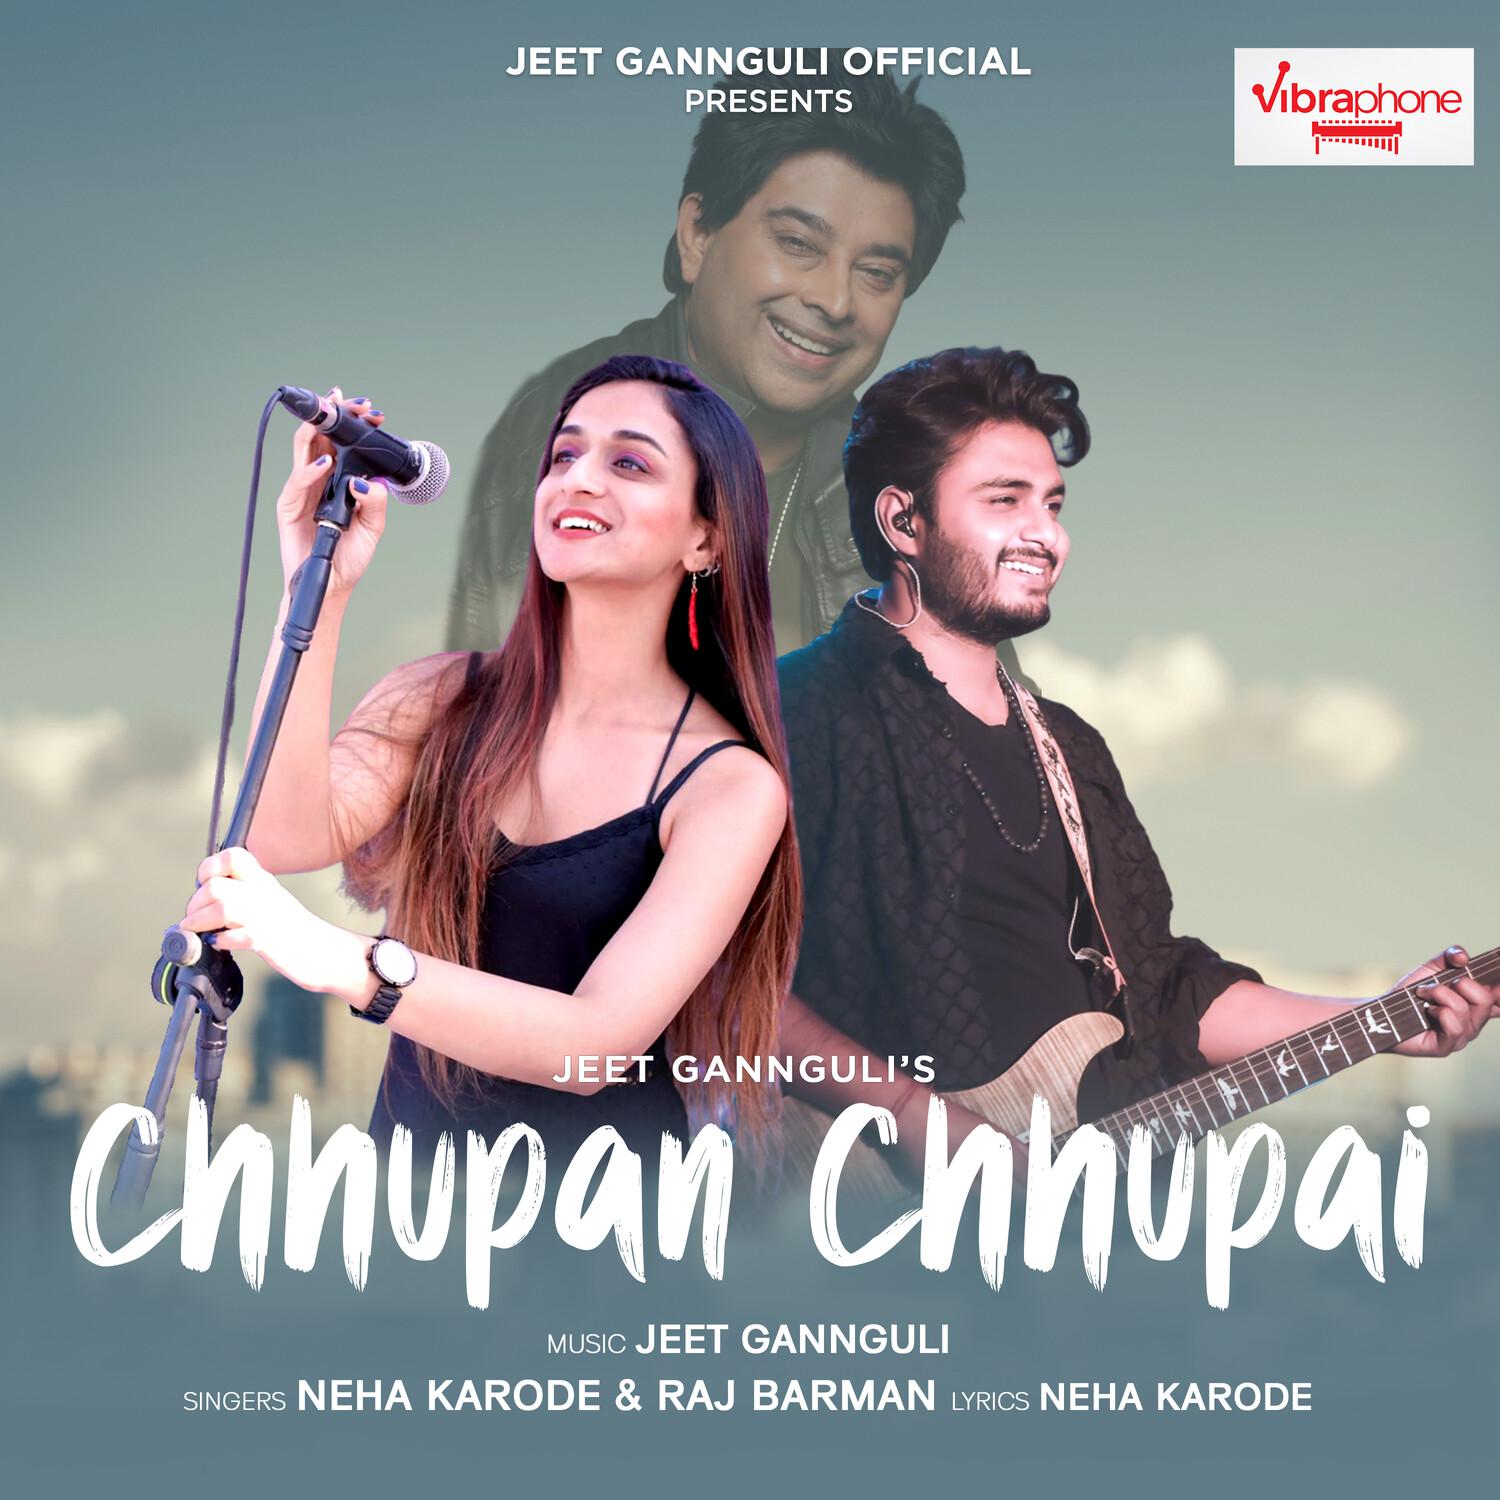 Neha Karode - Chhupan Chhupai